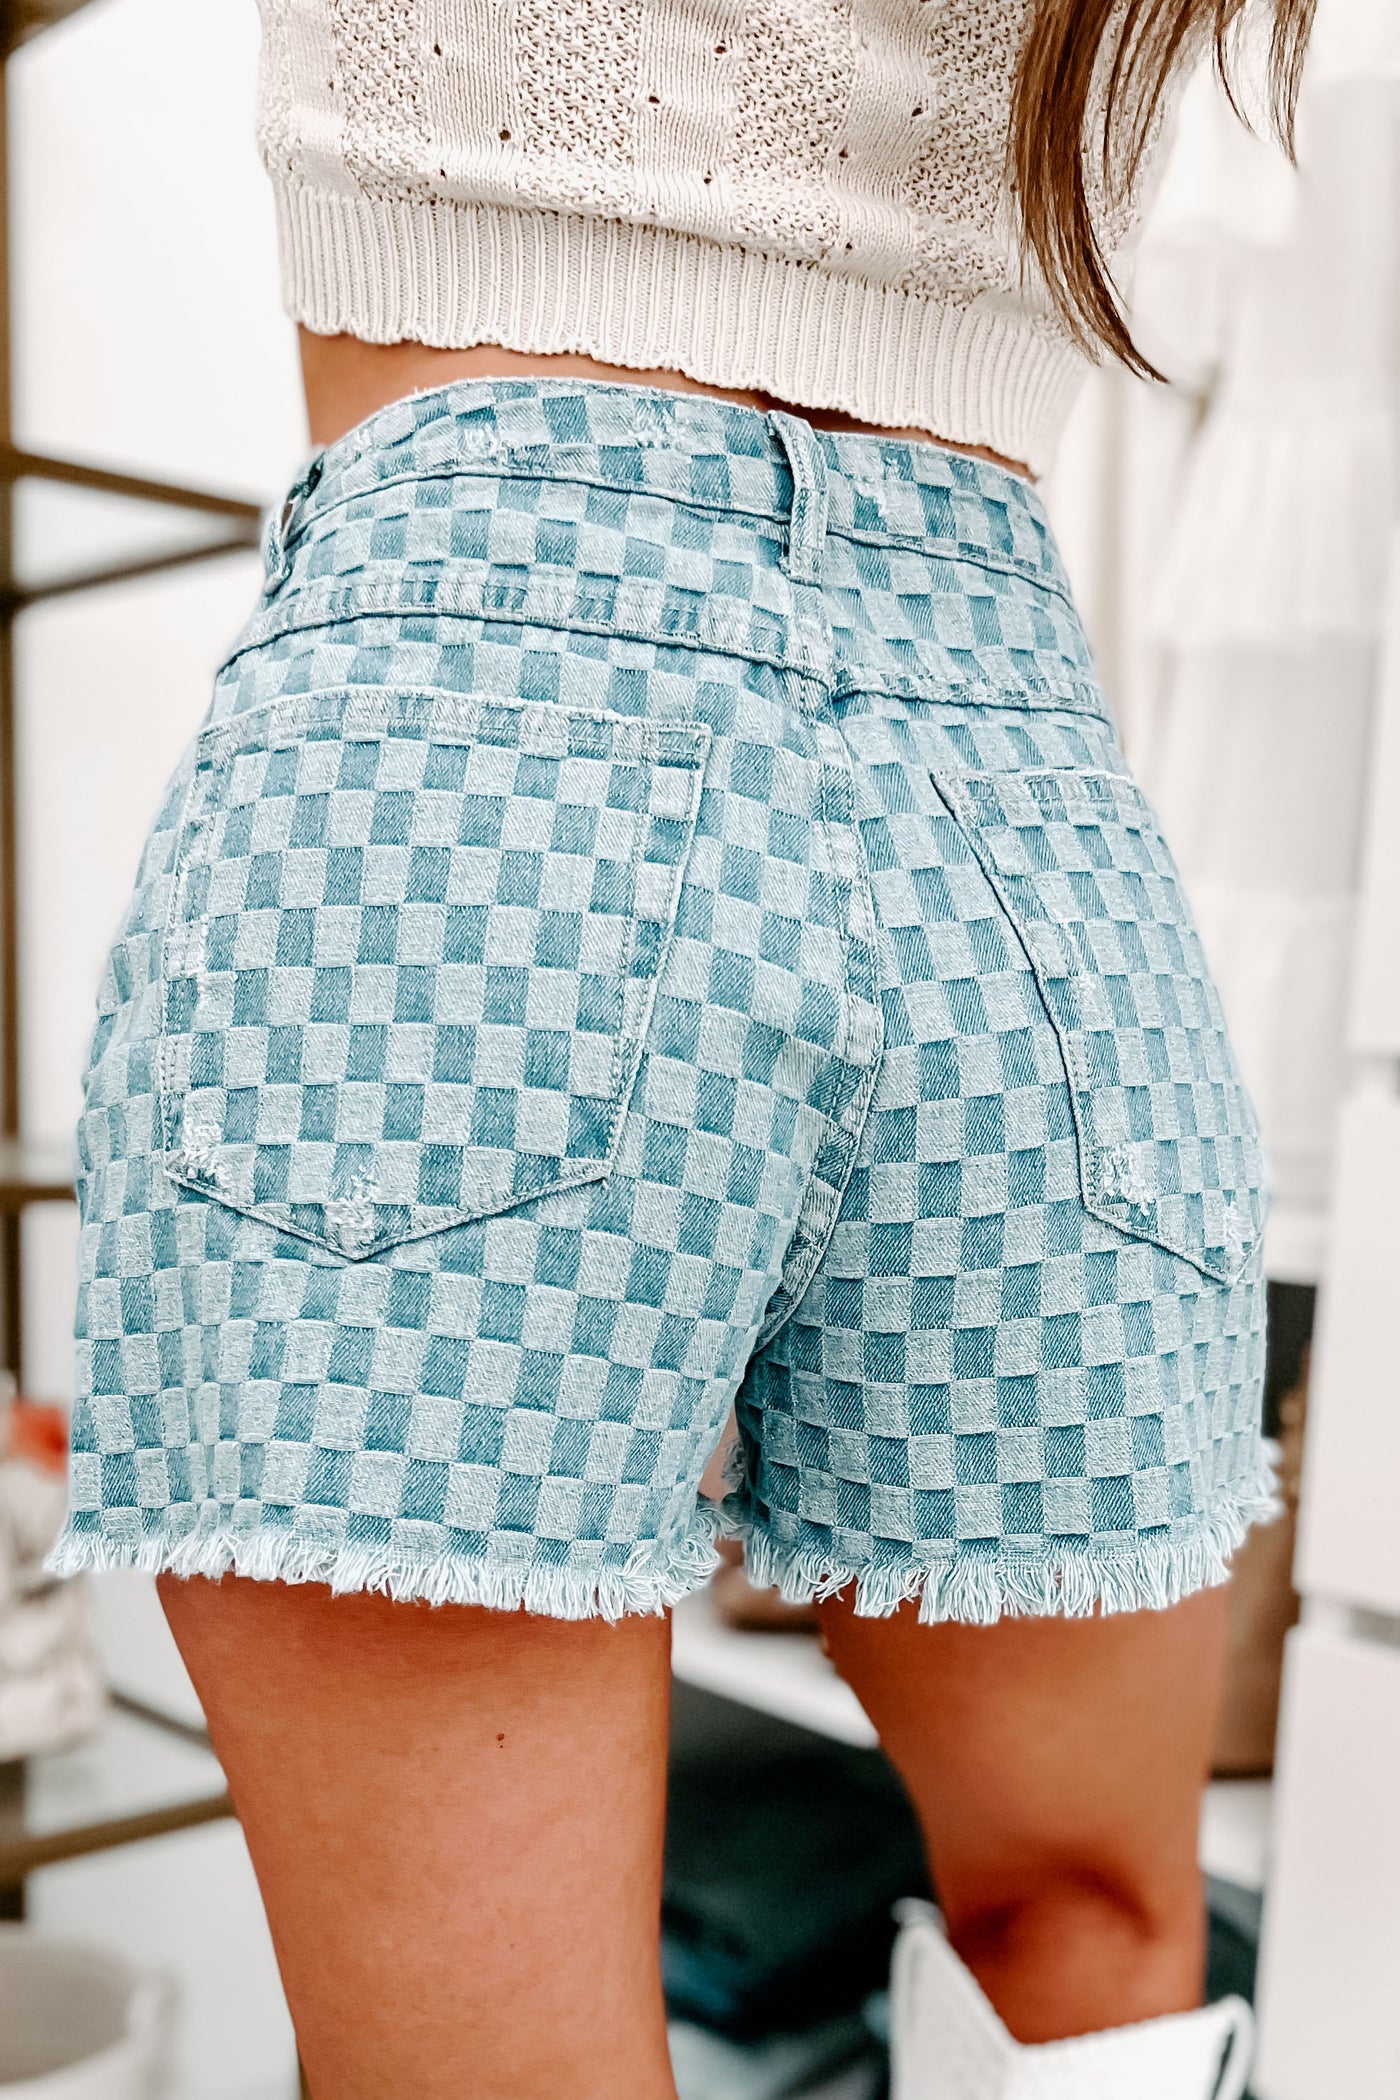 Checkered Skinny Denim Shorts - Light Wash